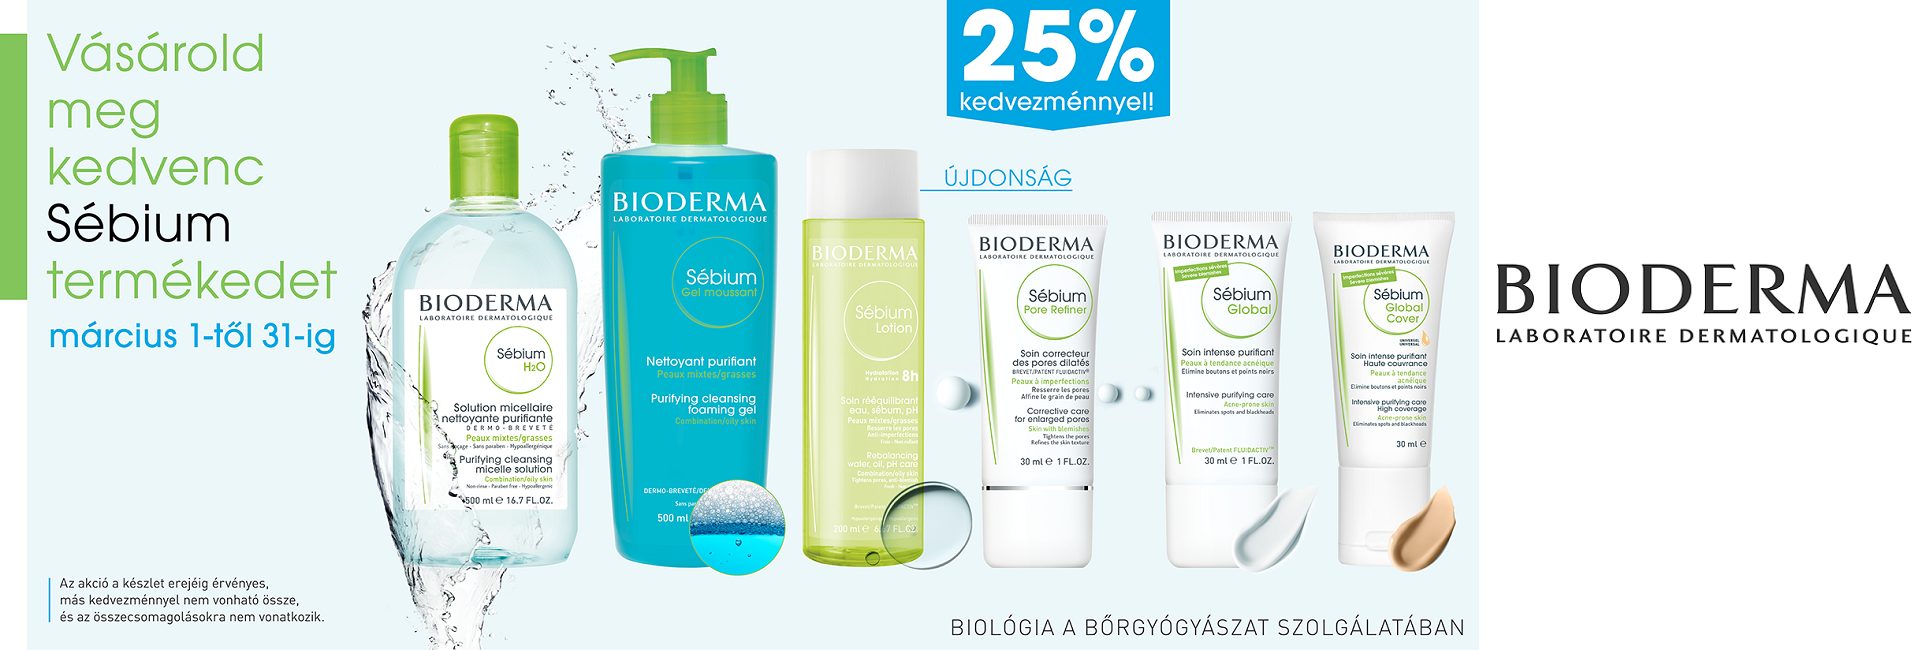 2019. március 1-31. között minden Bioderma Sébium termékre 25% kedvezményt adunk!